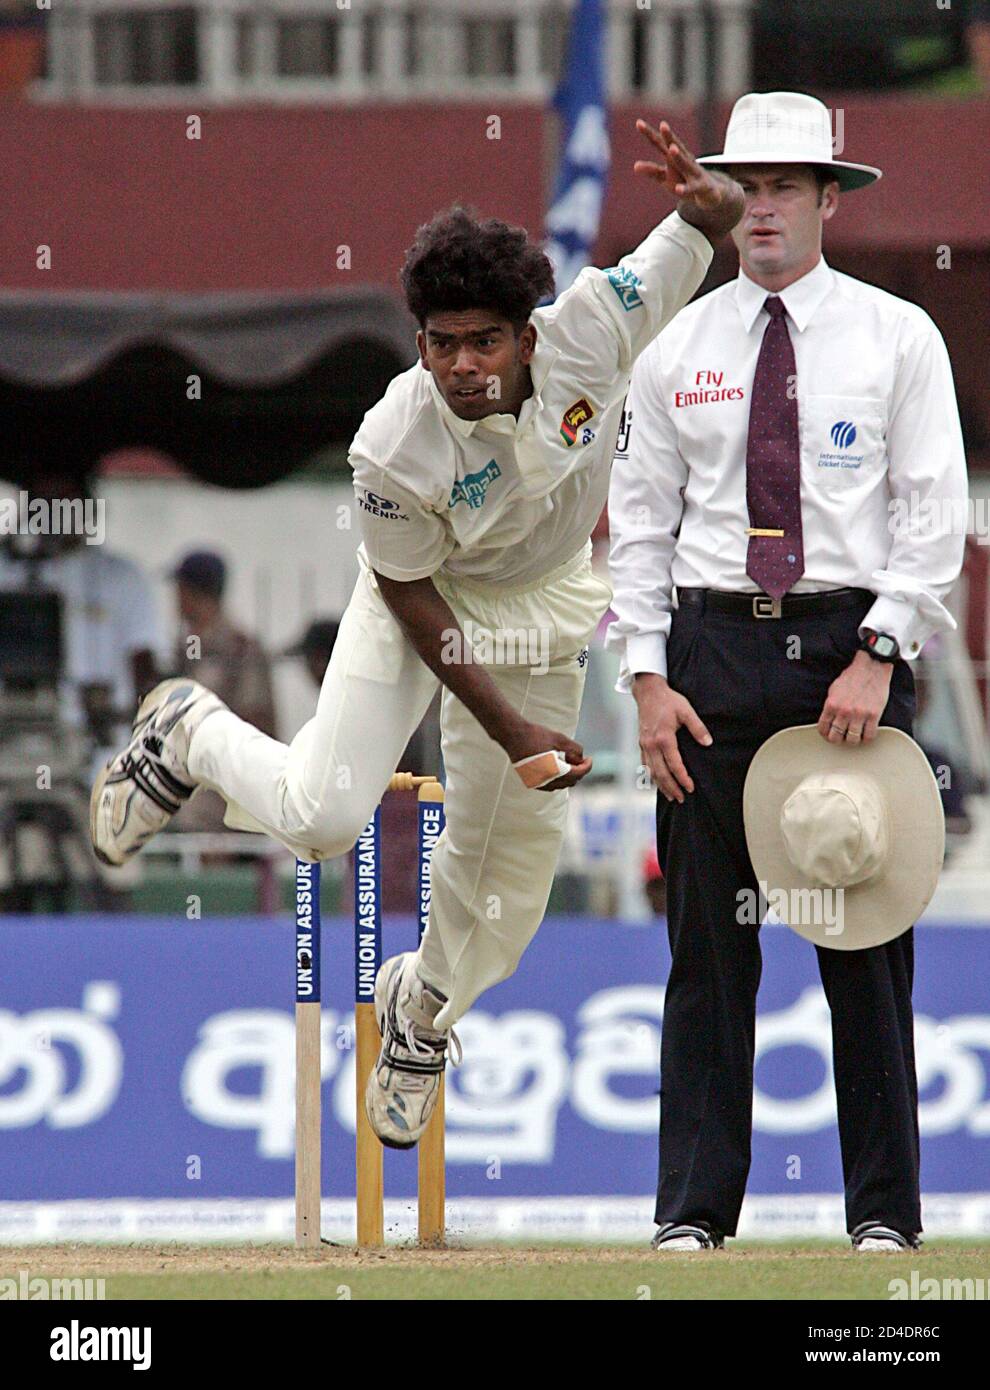 Malinga, le lanceur sri-lankais, lance un match de cricket contre les Antilles à Colombo. Le lanceur sri-lankais Lasith Malinga (L) lance une livraison alors que le juge-arbitre australien Simon Taufel regarde pendant la deuxième journée du premier match de cricket contre les Antilles à Colombo le 14 juillet 2005. Les Antilles ont été emmenées pour 285 le deuxième matin du premier test contre le Sri Lanka au club sportif cinghalais jeudi. REUTERS/Anurudha Lokuhapuarachchi Banque D'Images